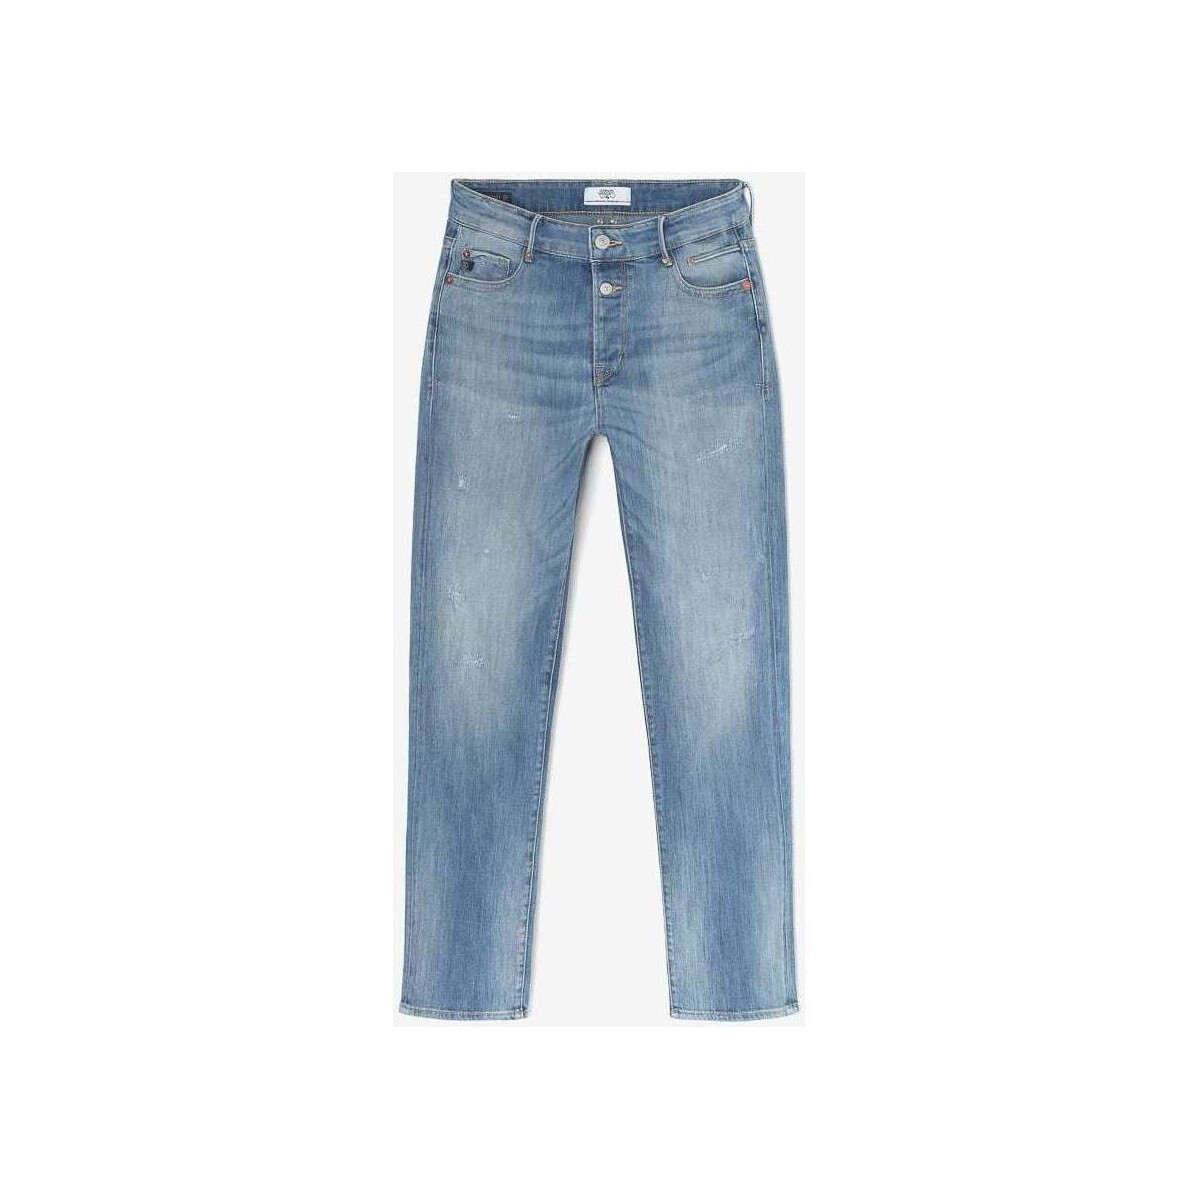 Le Temps des Cerises Bleu Basic 400/18 mom taille haute 7/8ème jeans destroy bleu k4A05uJg